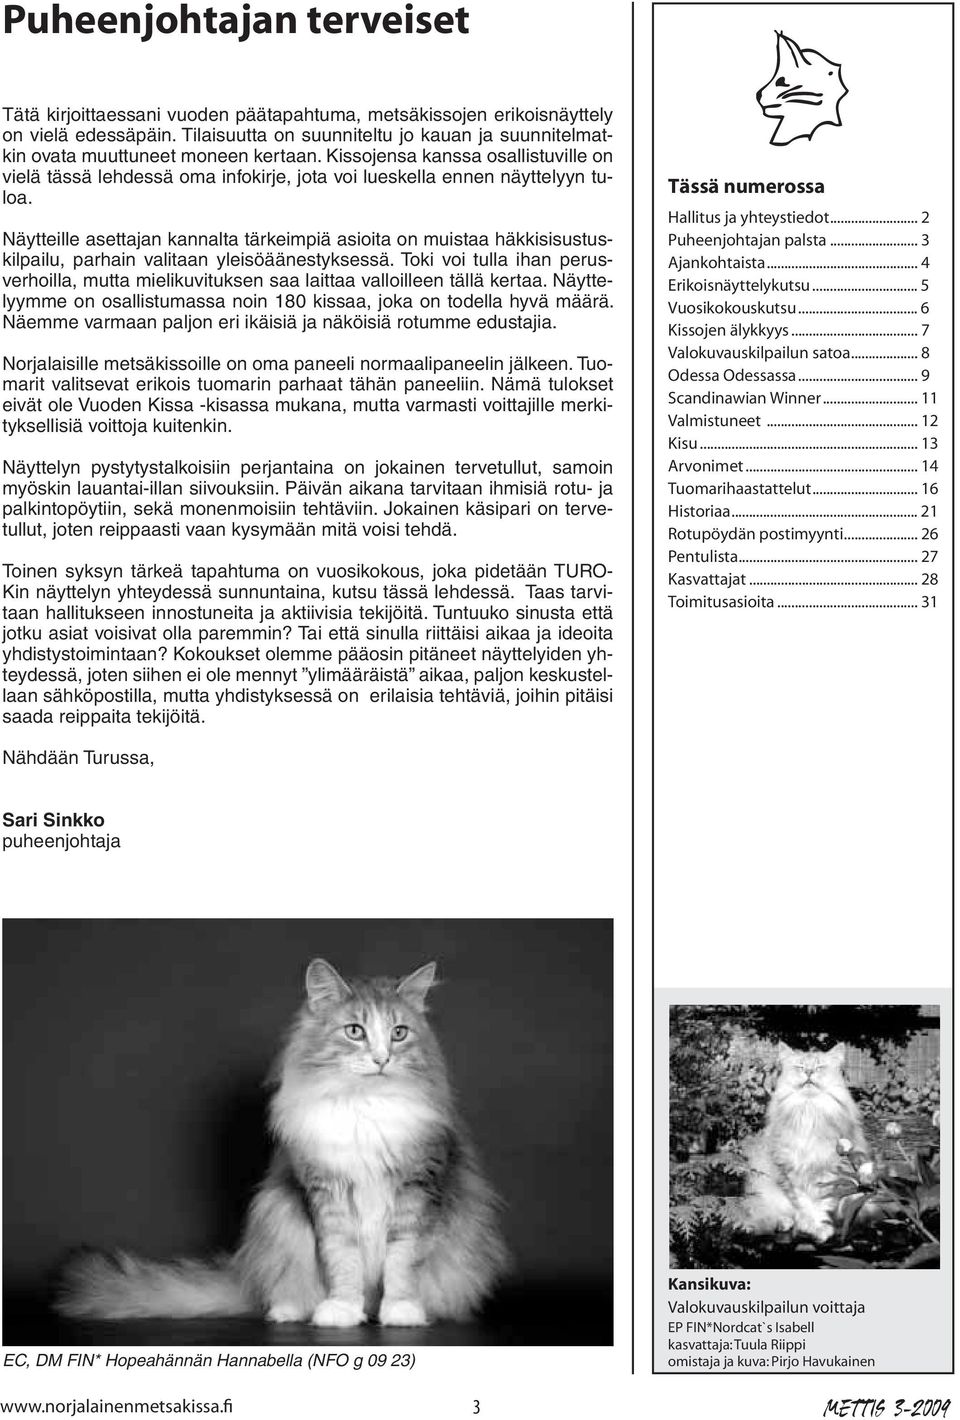 Kissojensa kanssa osallistuville on vielä tässä lehdessä oma infokirje, jota voi lueskella ennen näyttelyyn tuloa.